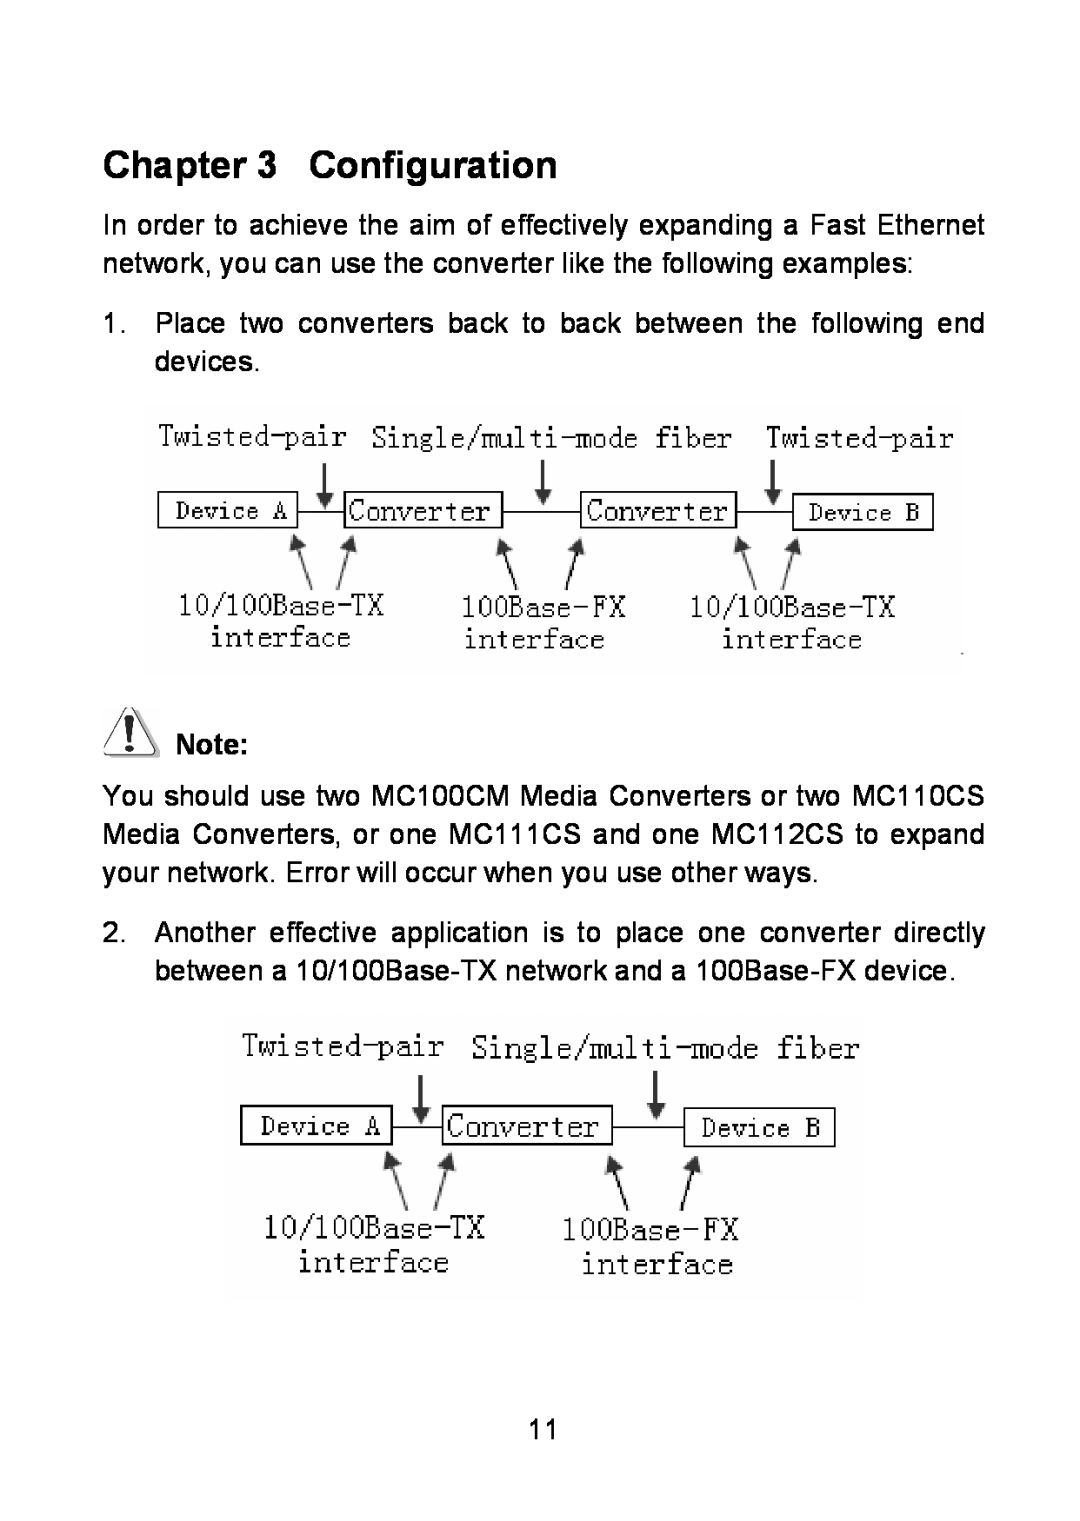 TP-Link MC100CM, MC112CS, MC111CS manual Configuration 